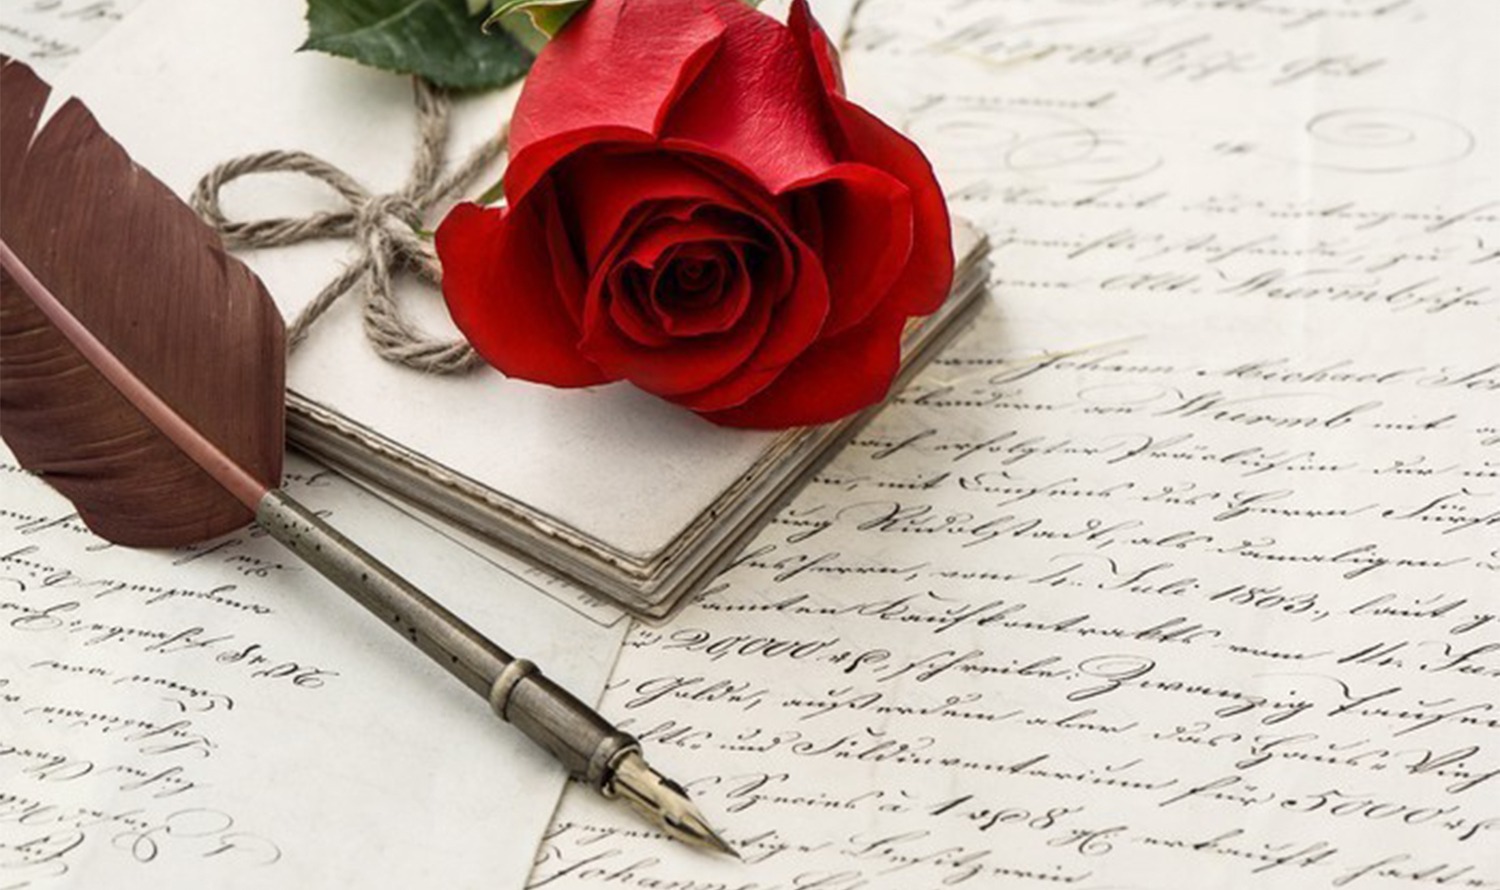 این تصویر شامل یک گل رز قرمز، یک قلم قدیمی و چندین نامه دست نویس است که فضایی نوستالژیک را ایجاد می کند.